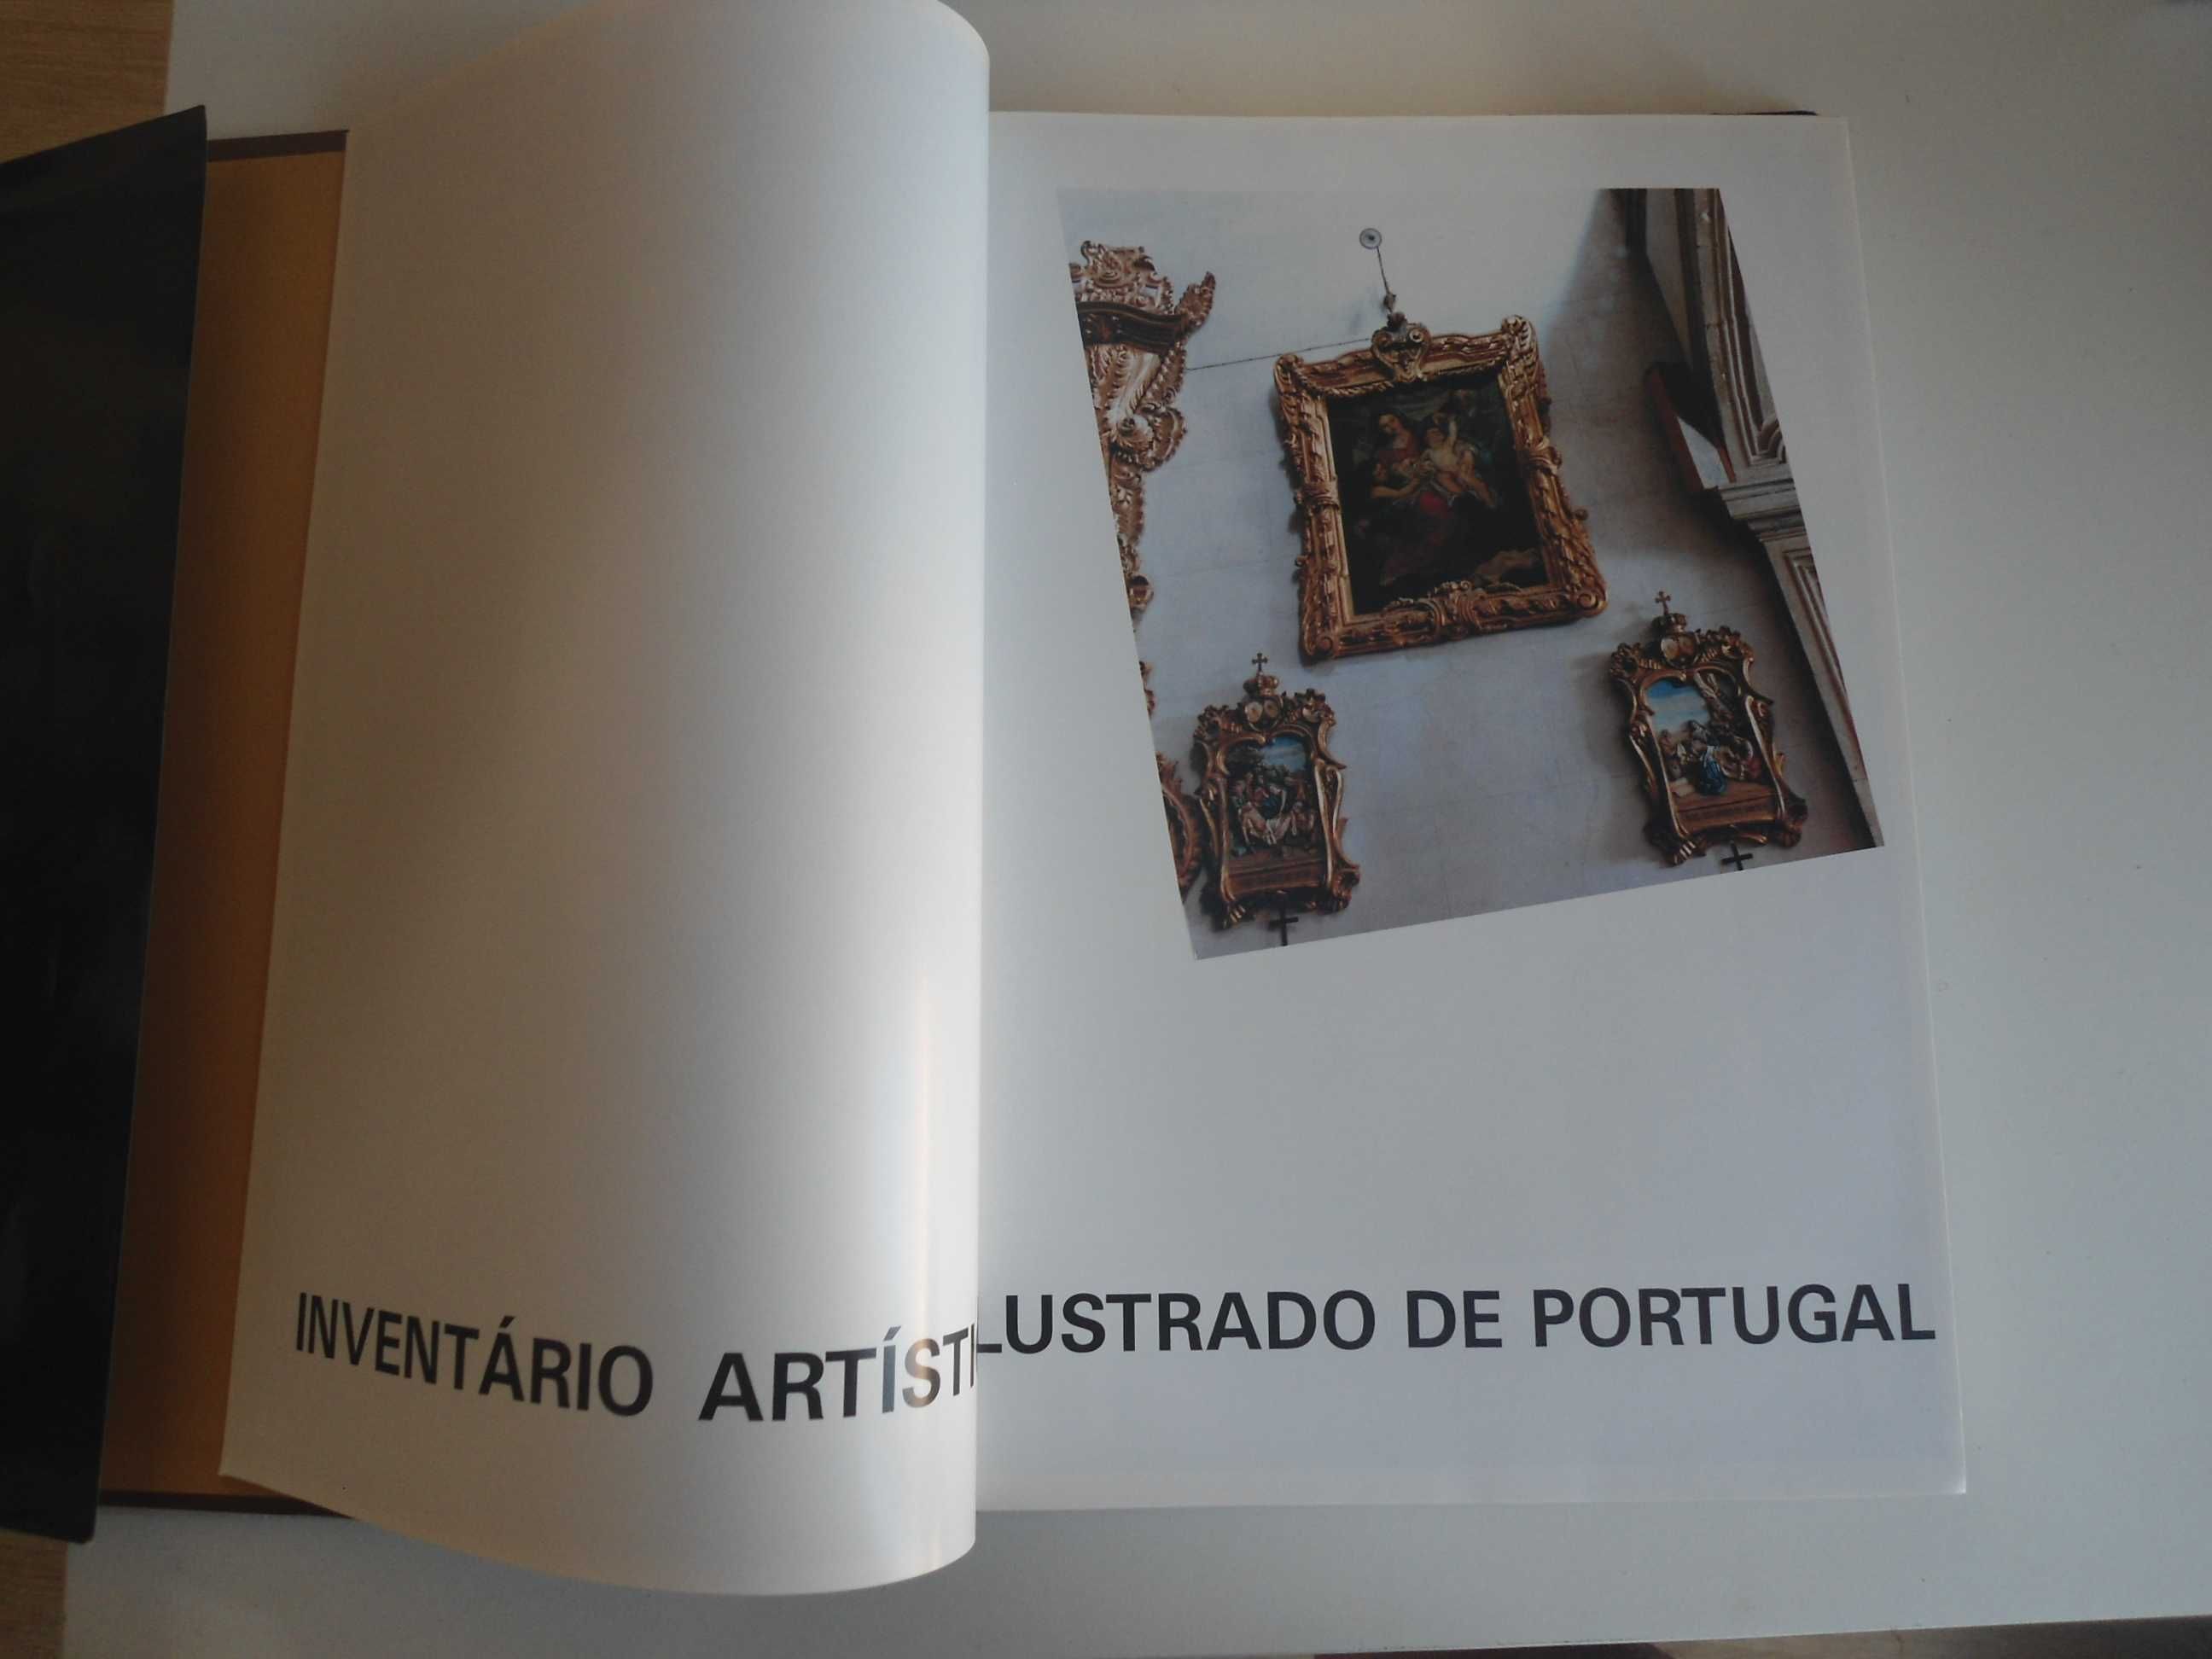 Inventário Artístico Ilustrado de Portugal